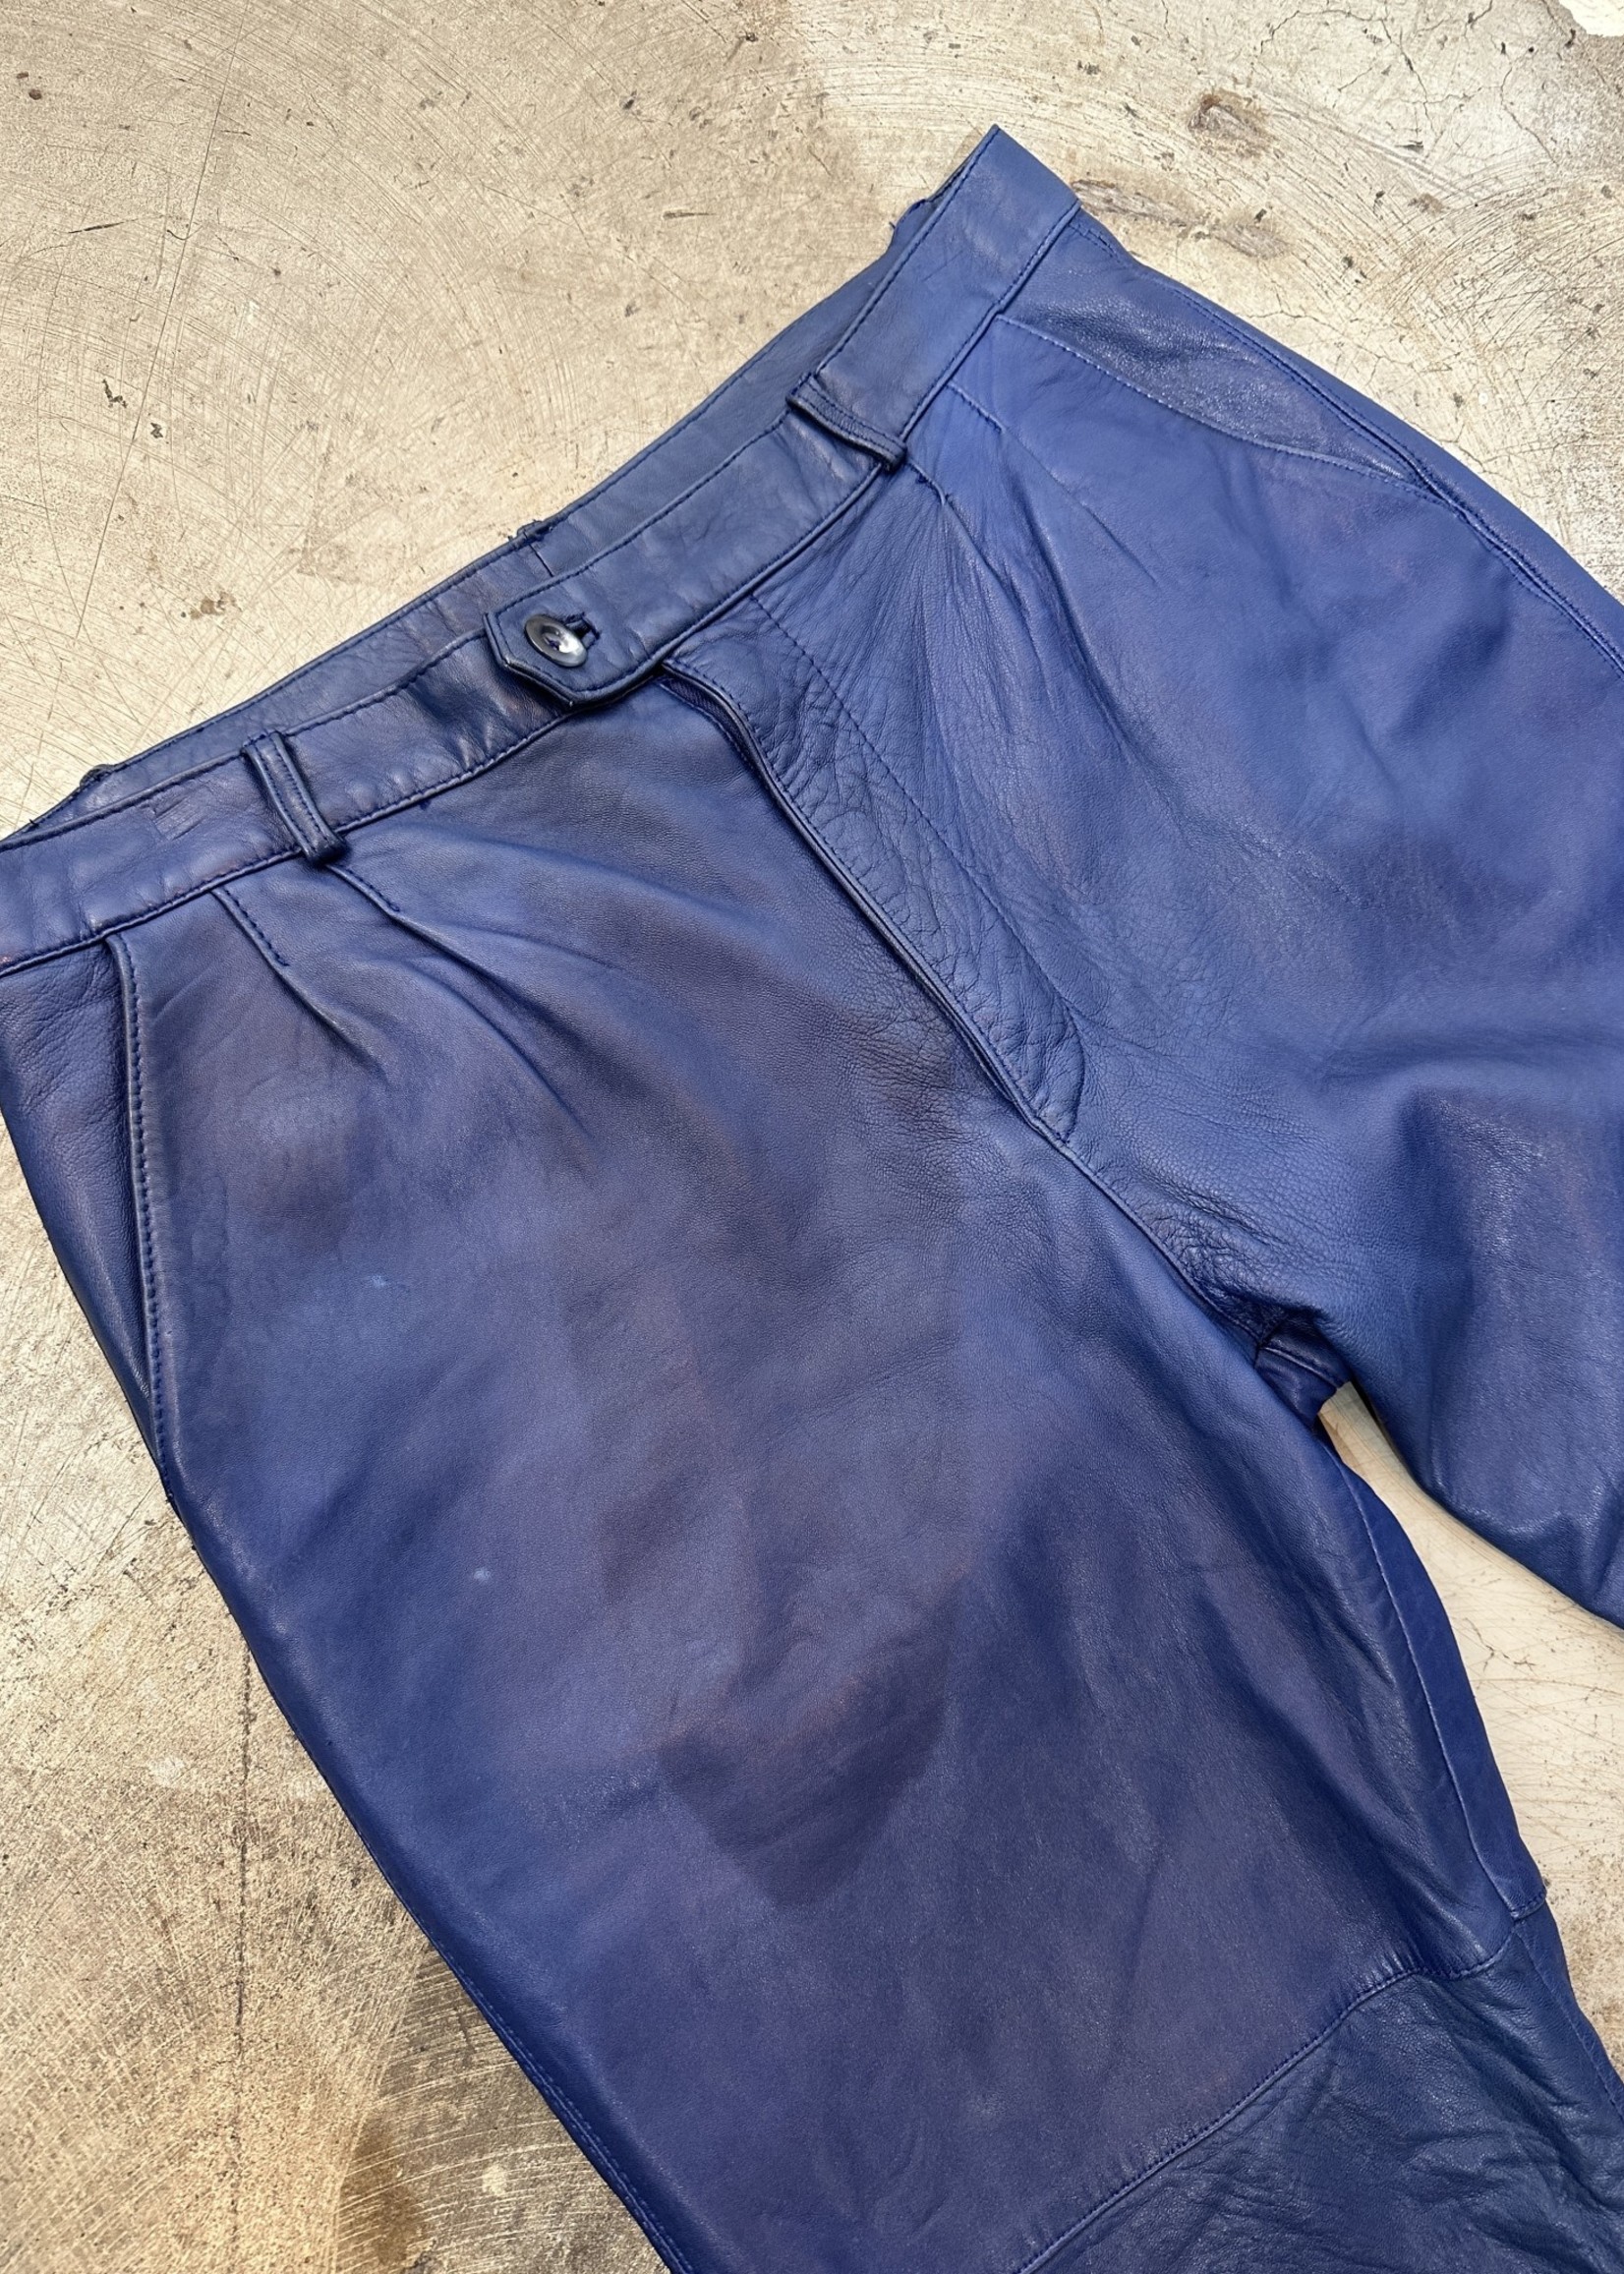 J Park Blue Leather Pants 36